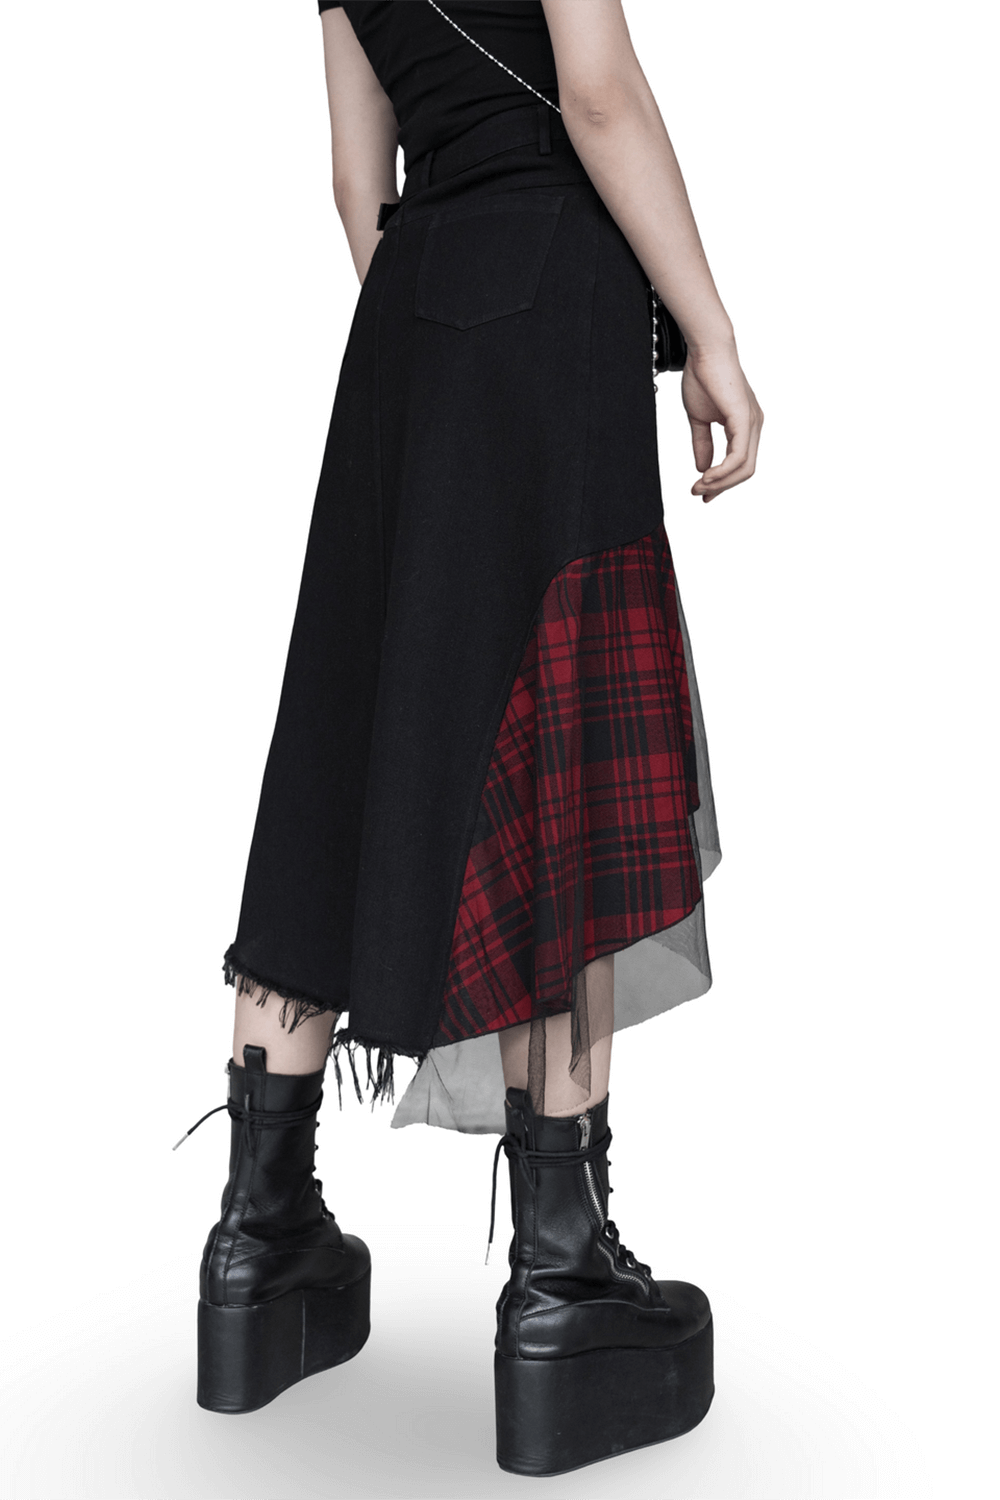 Edgy High-Waist Plaid Skirt With Irregular Hem